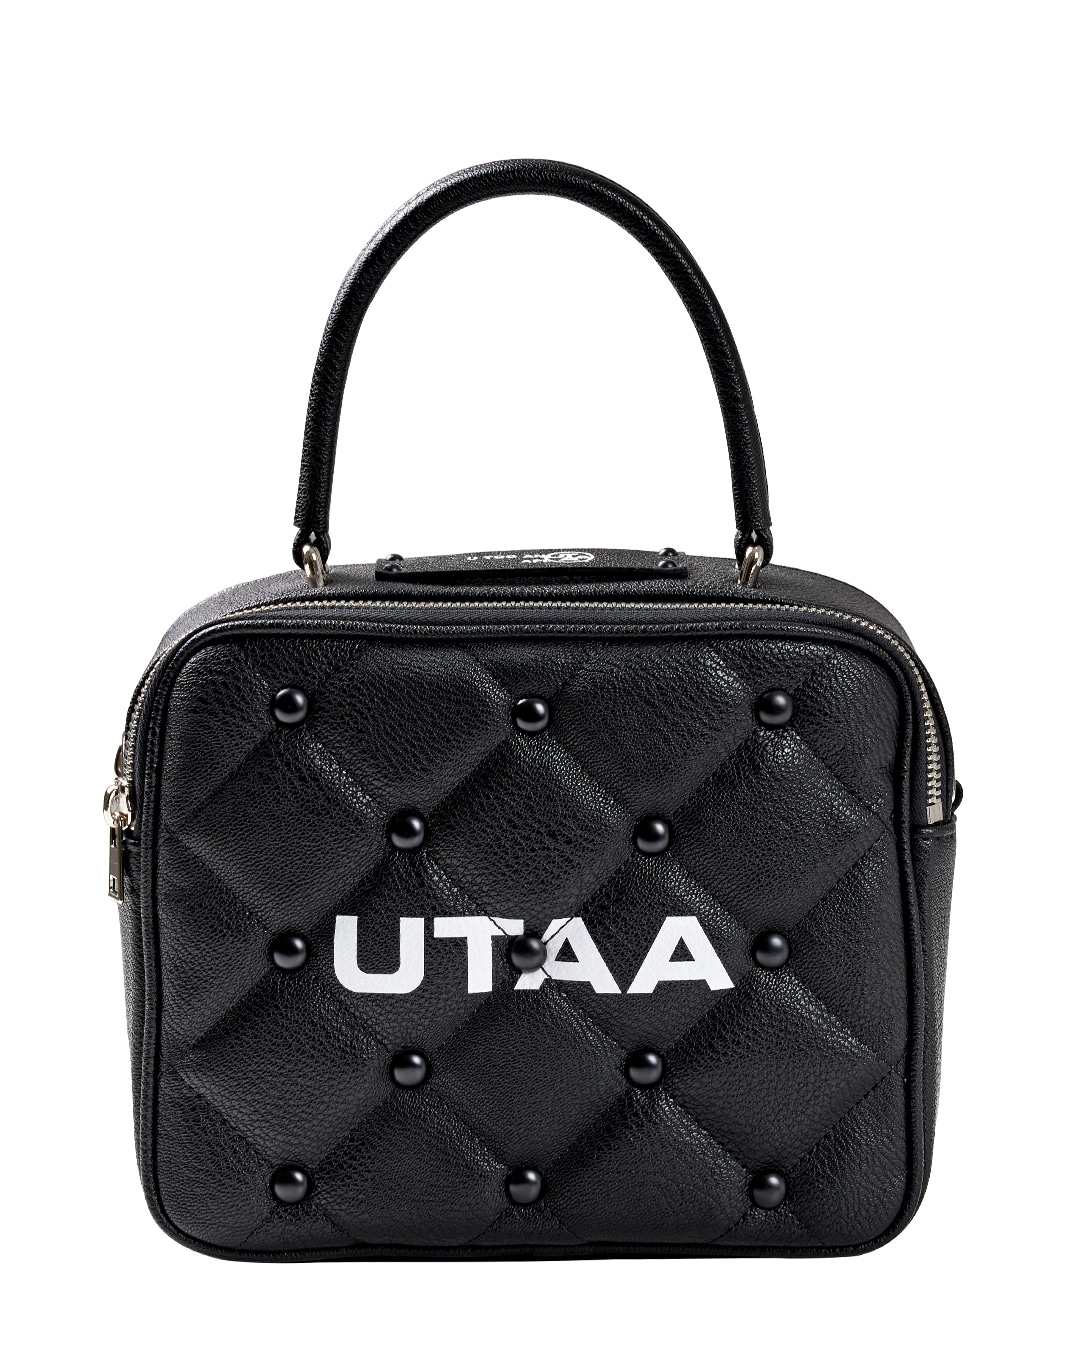 UTAA Quilting Pouch Bag : Black (UD0GAU103BK)